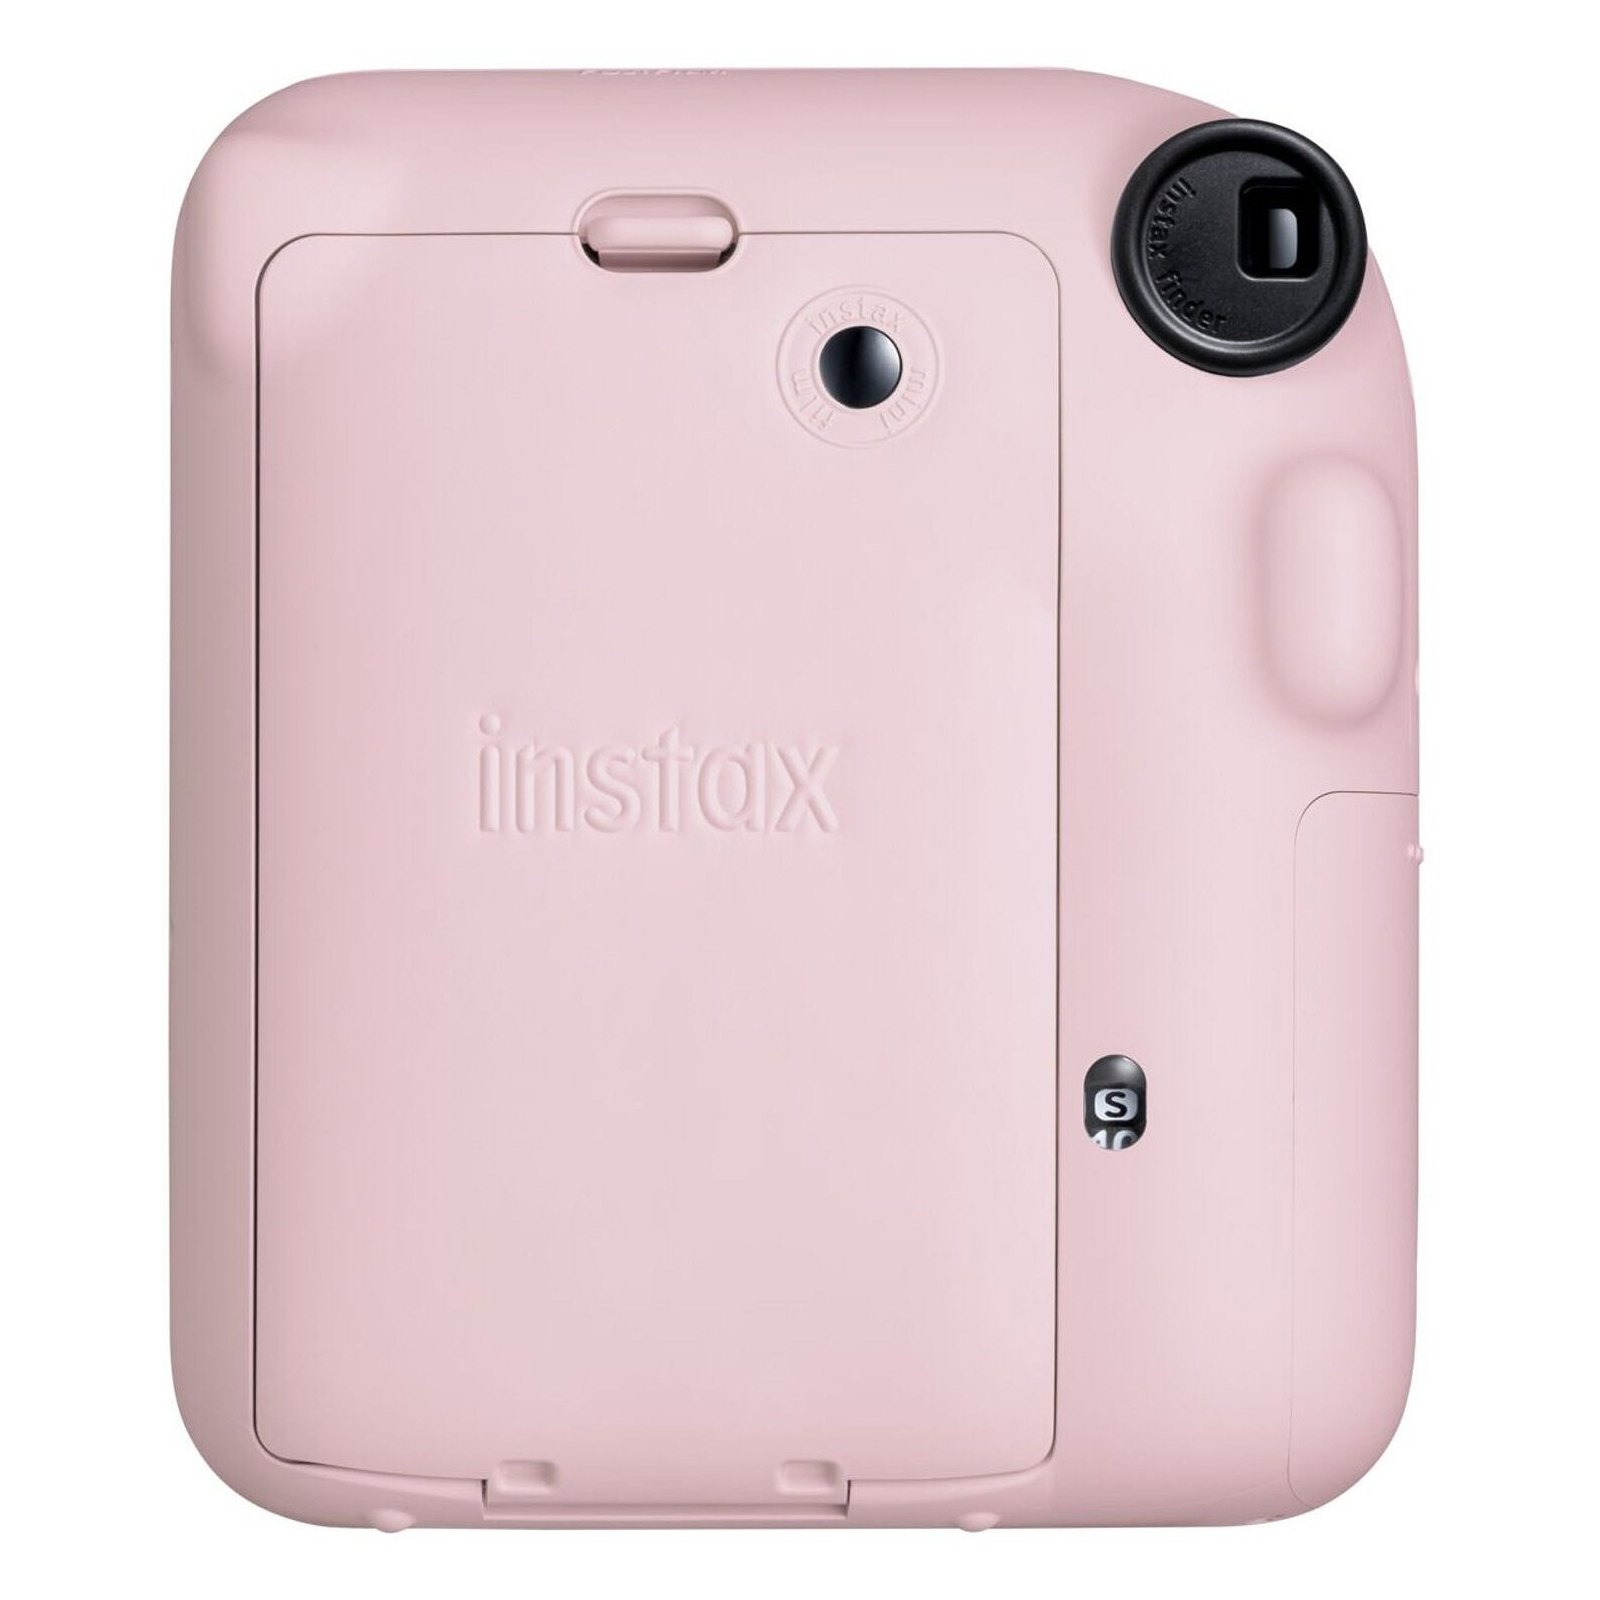 Камера моментальной печати Fujifilm INSTAX Mini 12 PINK (16806107) изображение 5